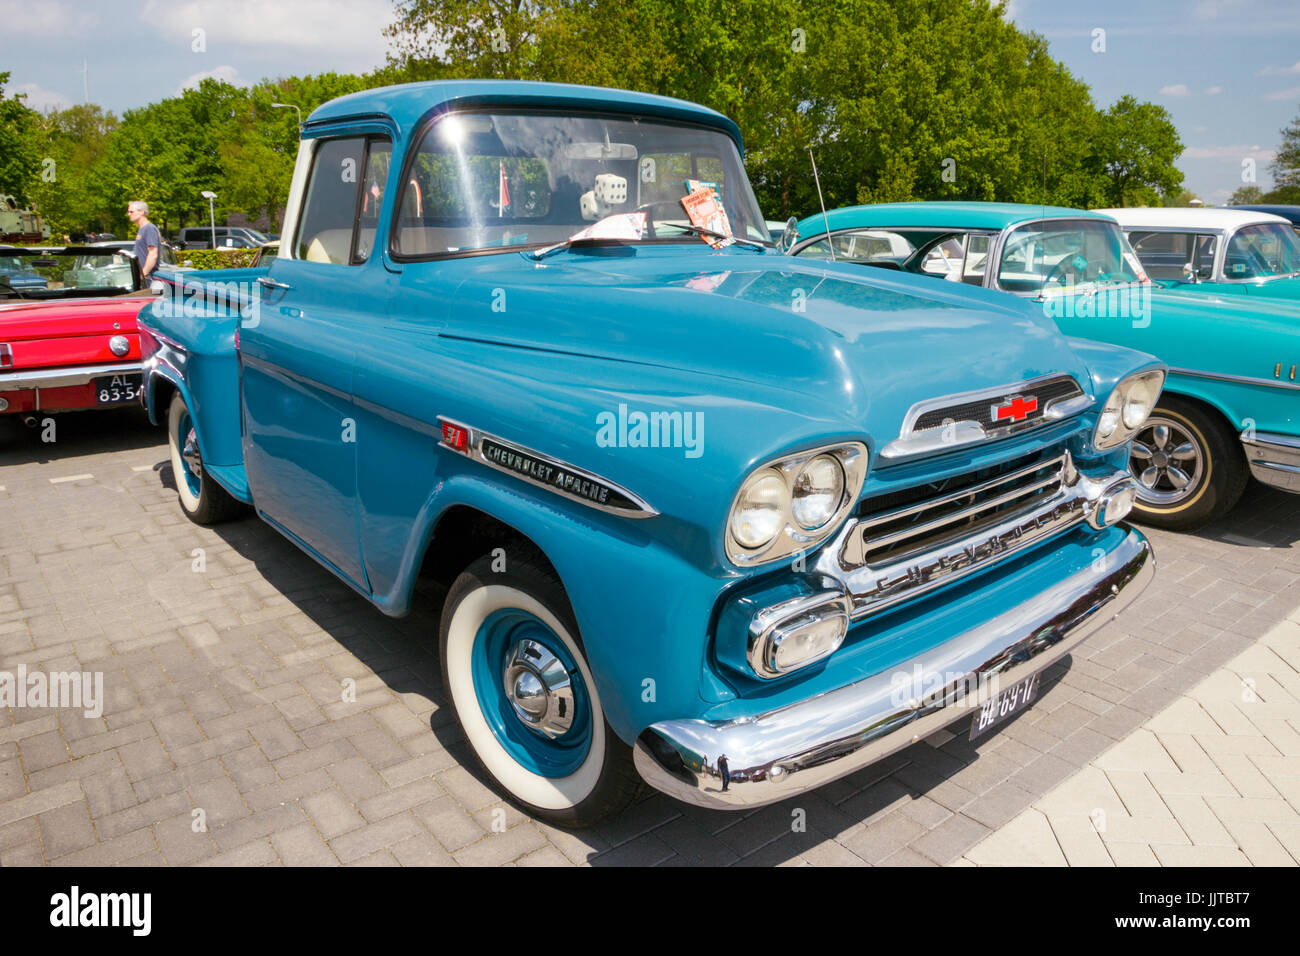 DEN BOSCH, Niederlande - 10. Mai 2015: Blau 1959 Chevrolet Apache 3100 klassische Pickup-Truck. Stockfoto